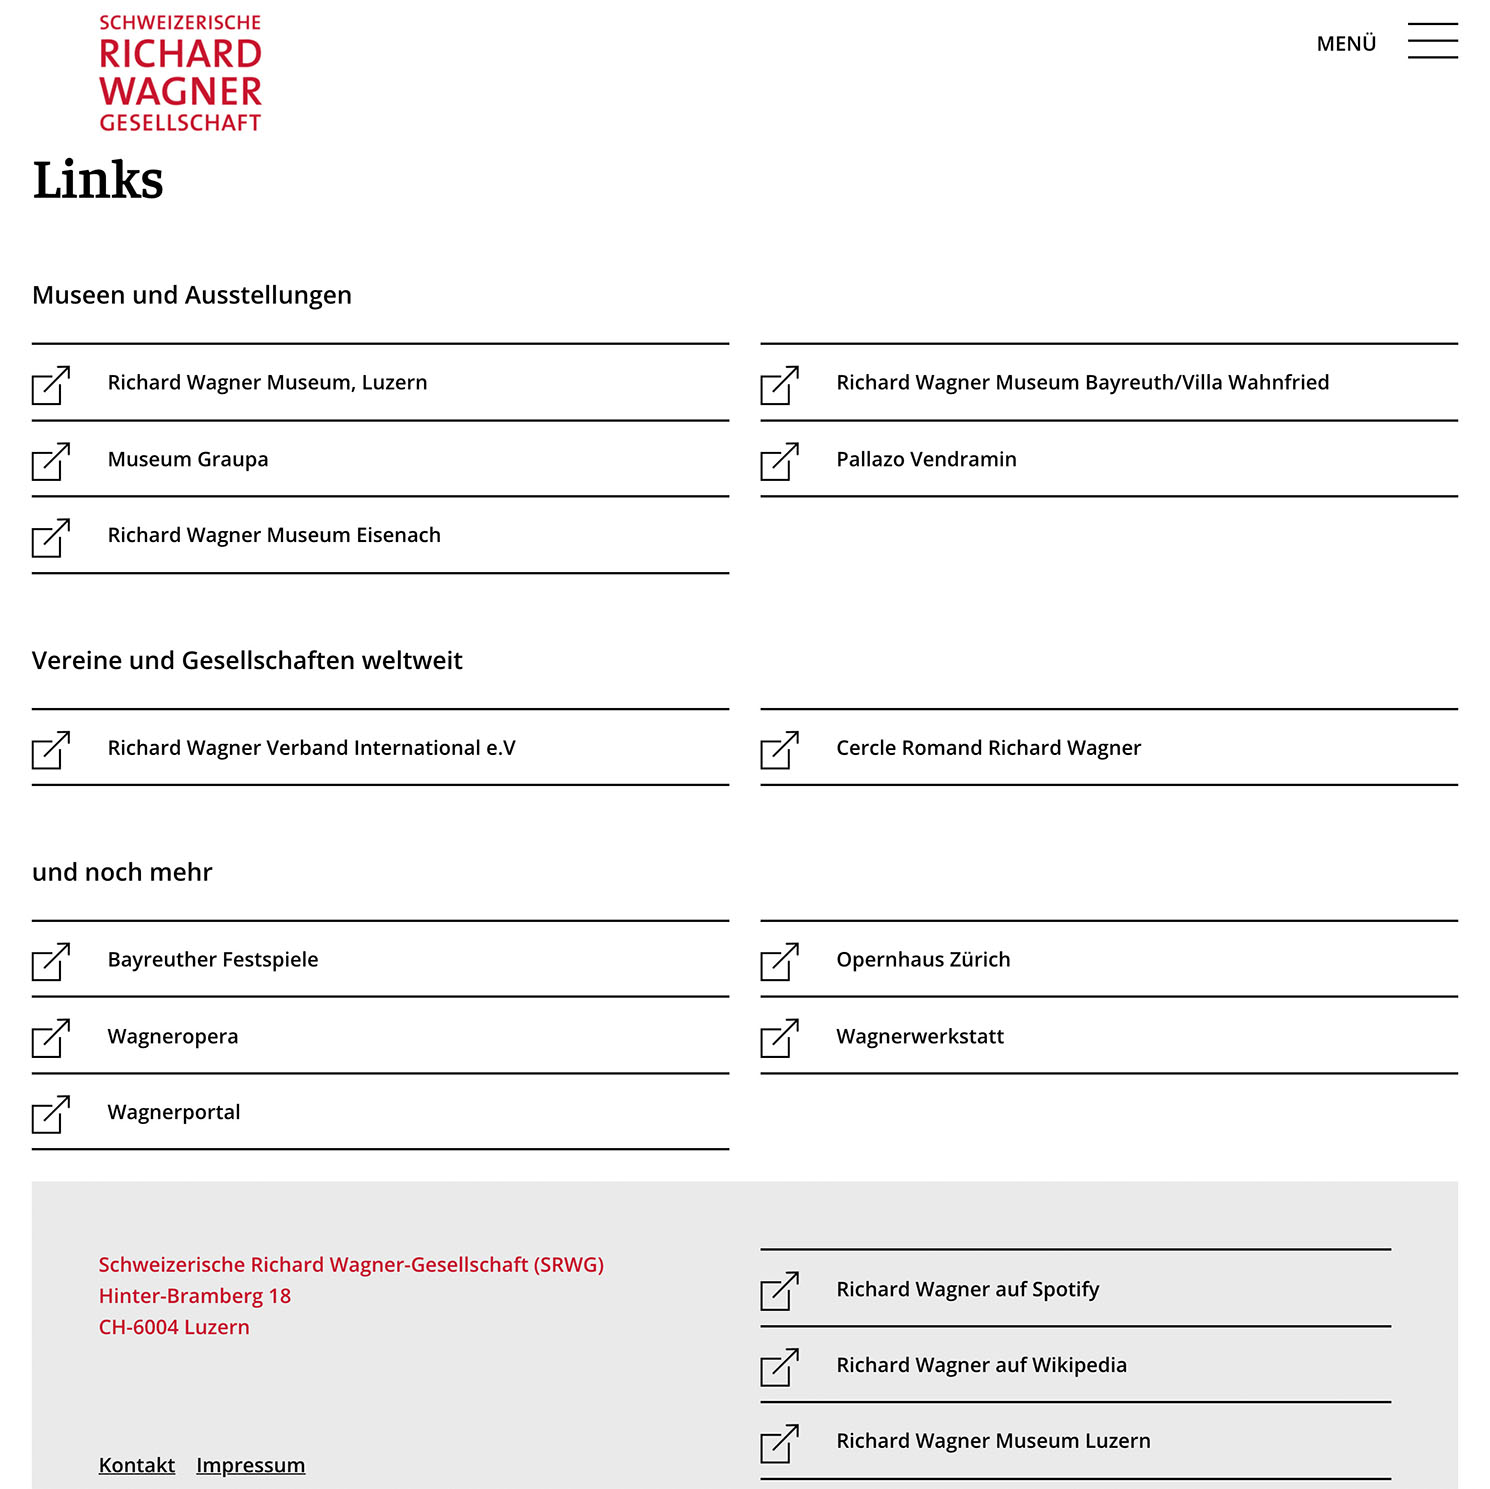 Schweizerische Richard Wagner-Gesellschaft (SRWG) Website Links